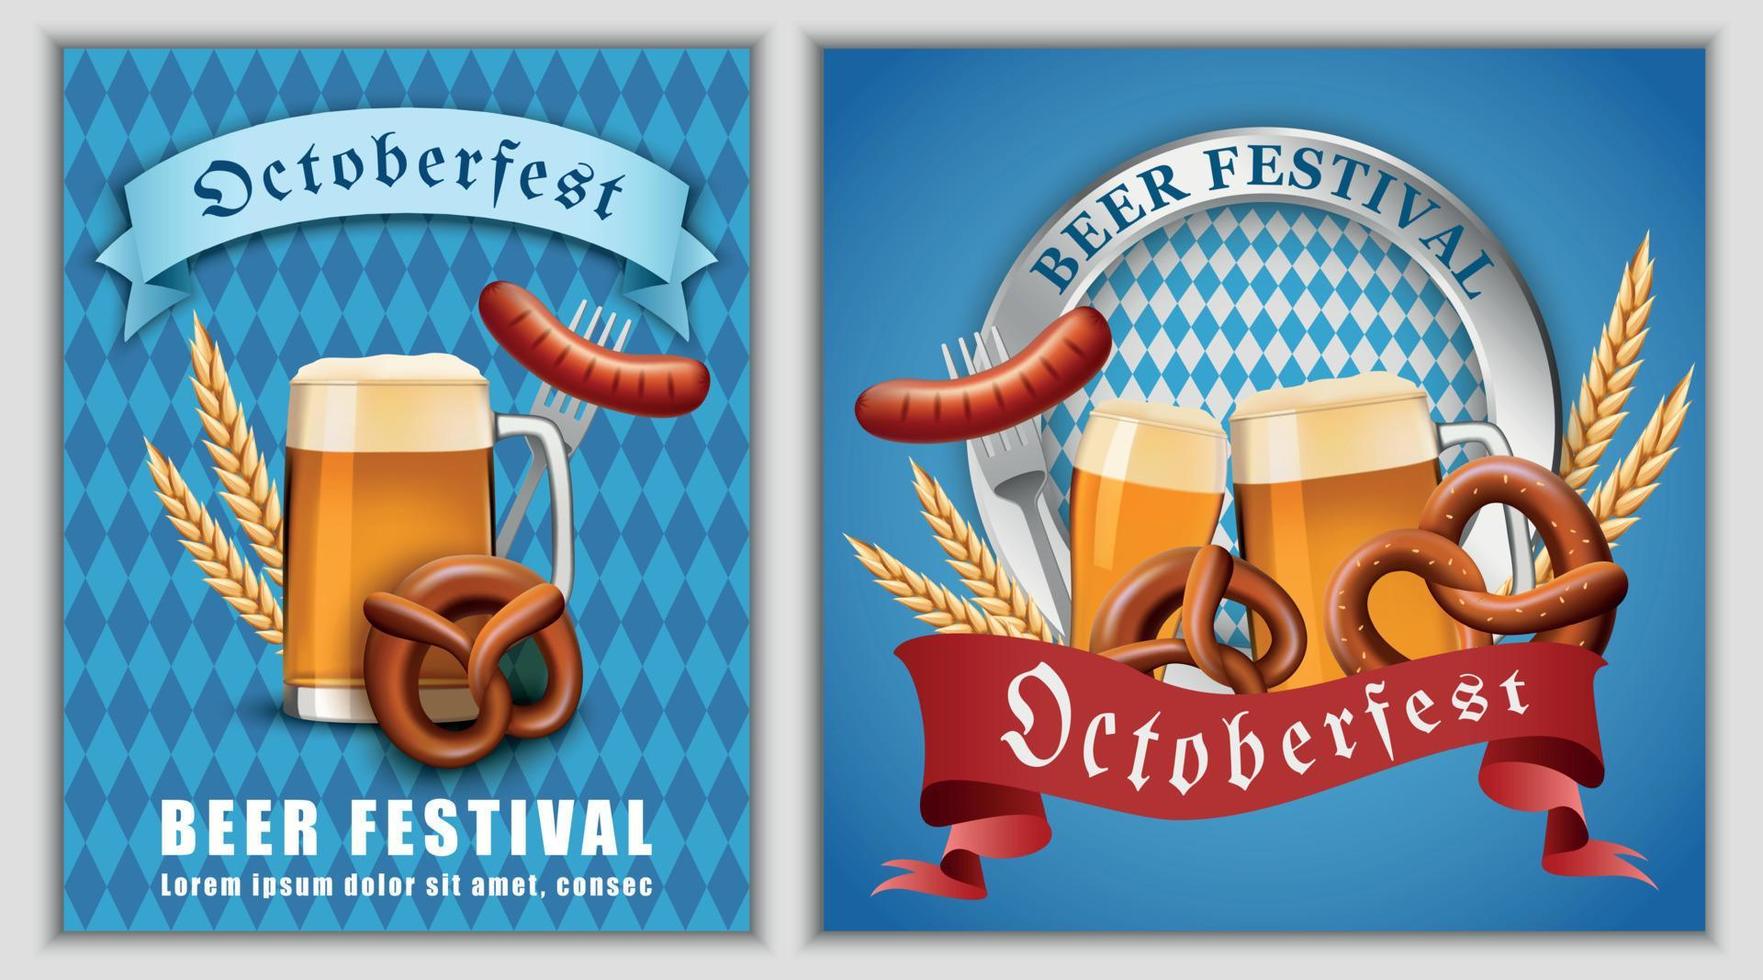 concepto de banner de cerveza del festival de octubre, estilo realista vector